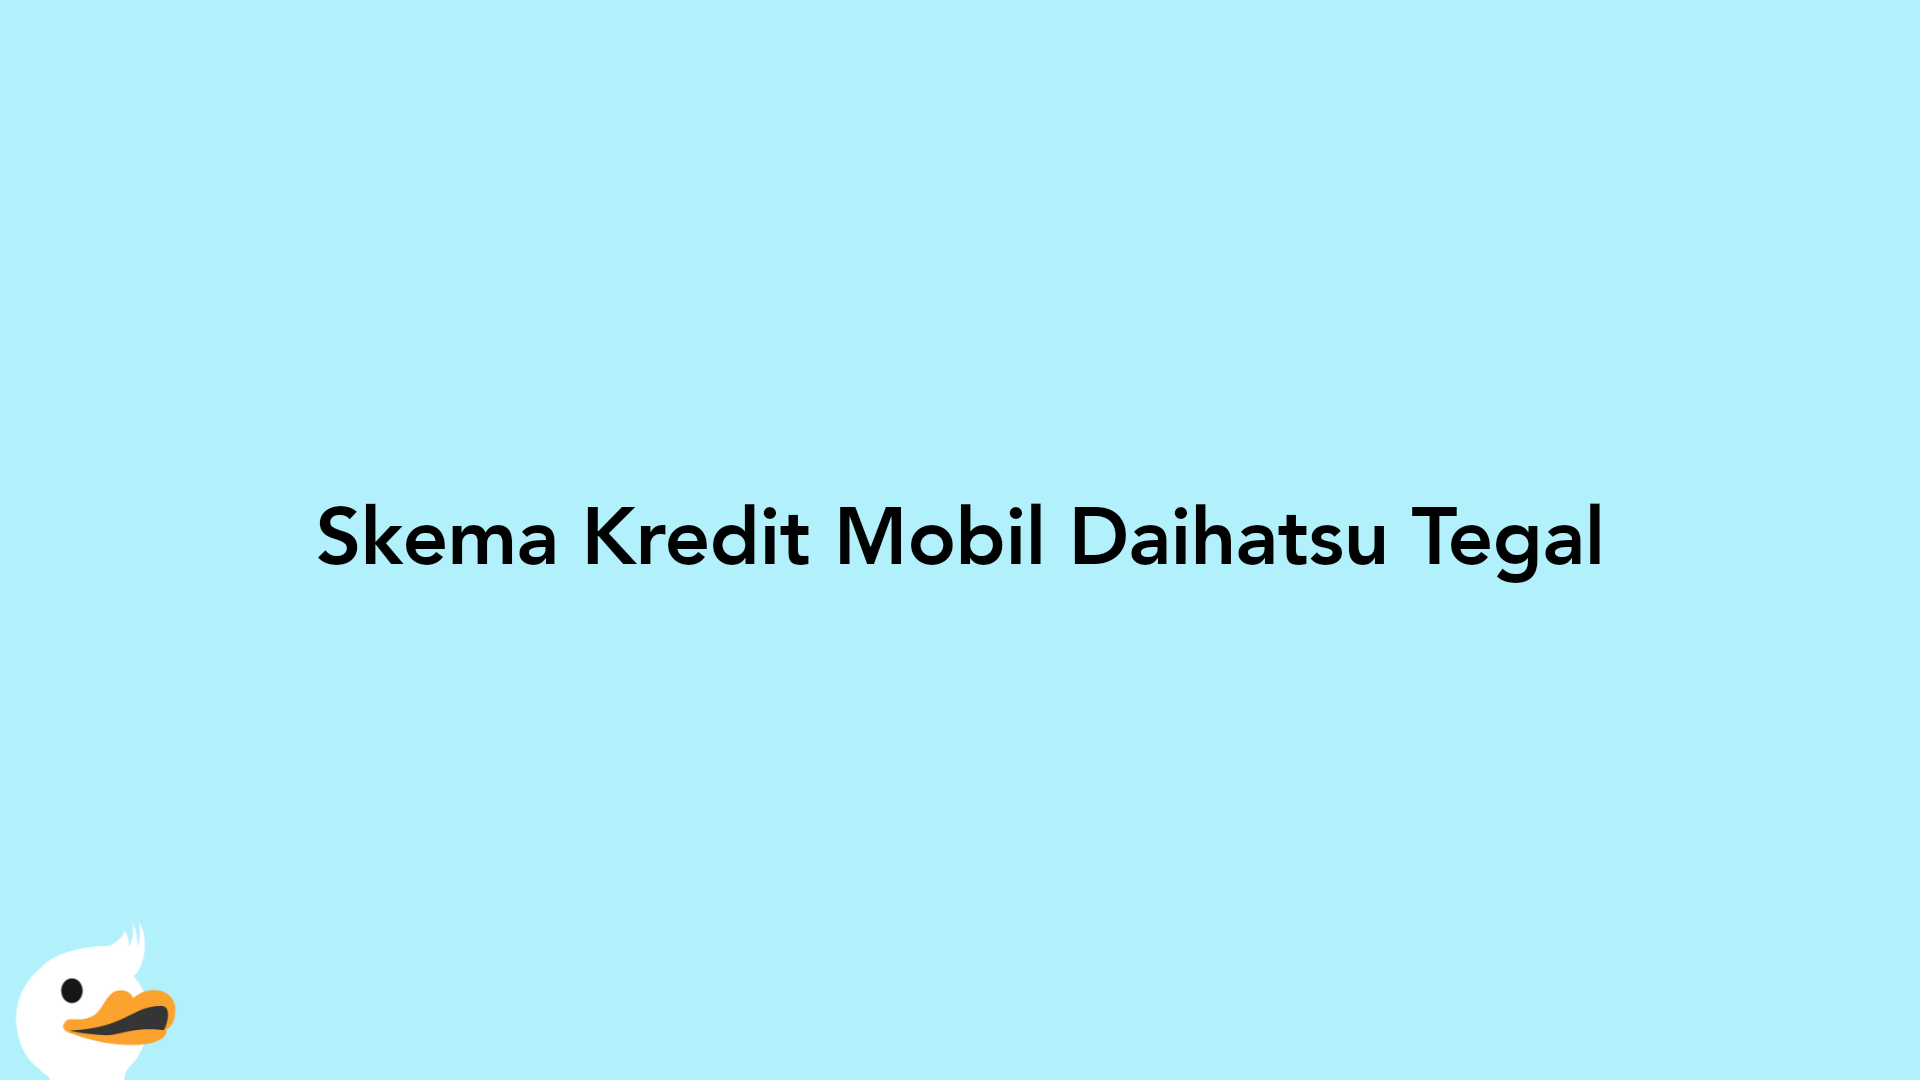 Skema Kredit Mobil Daihatsu Tegal